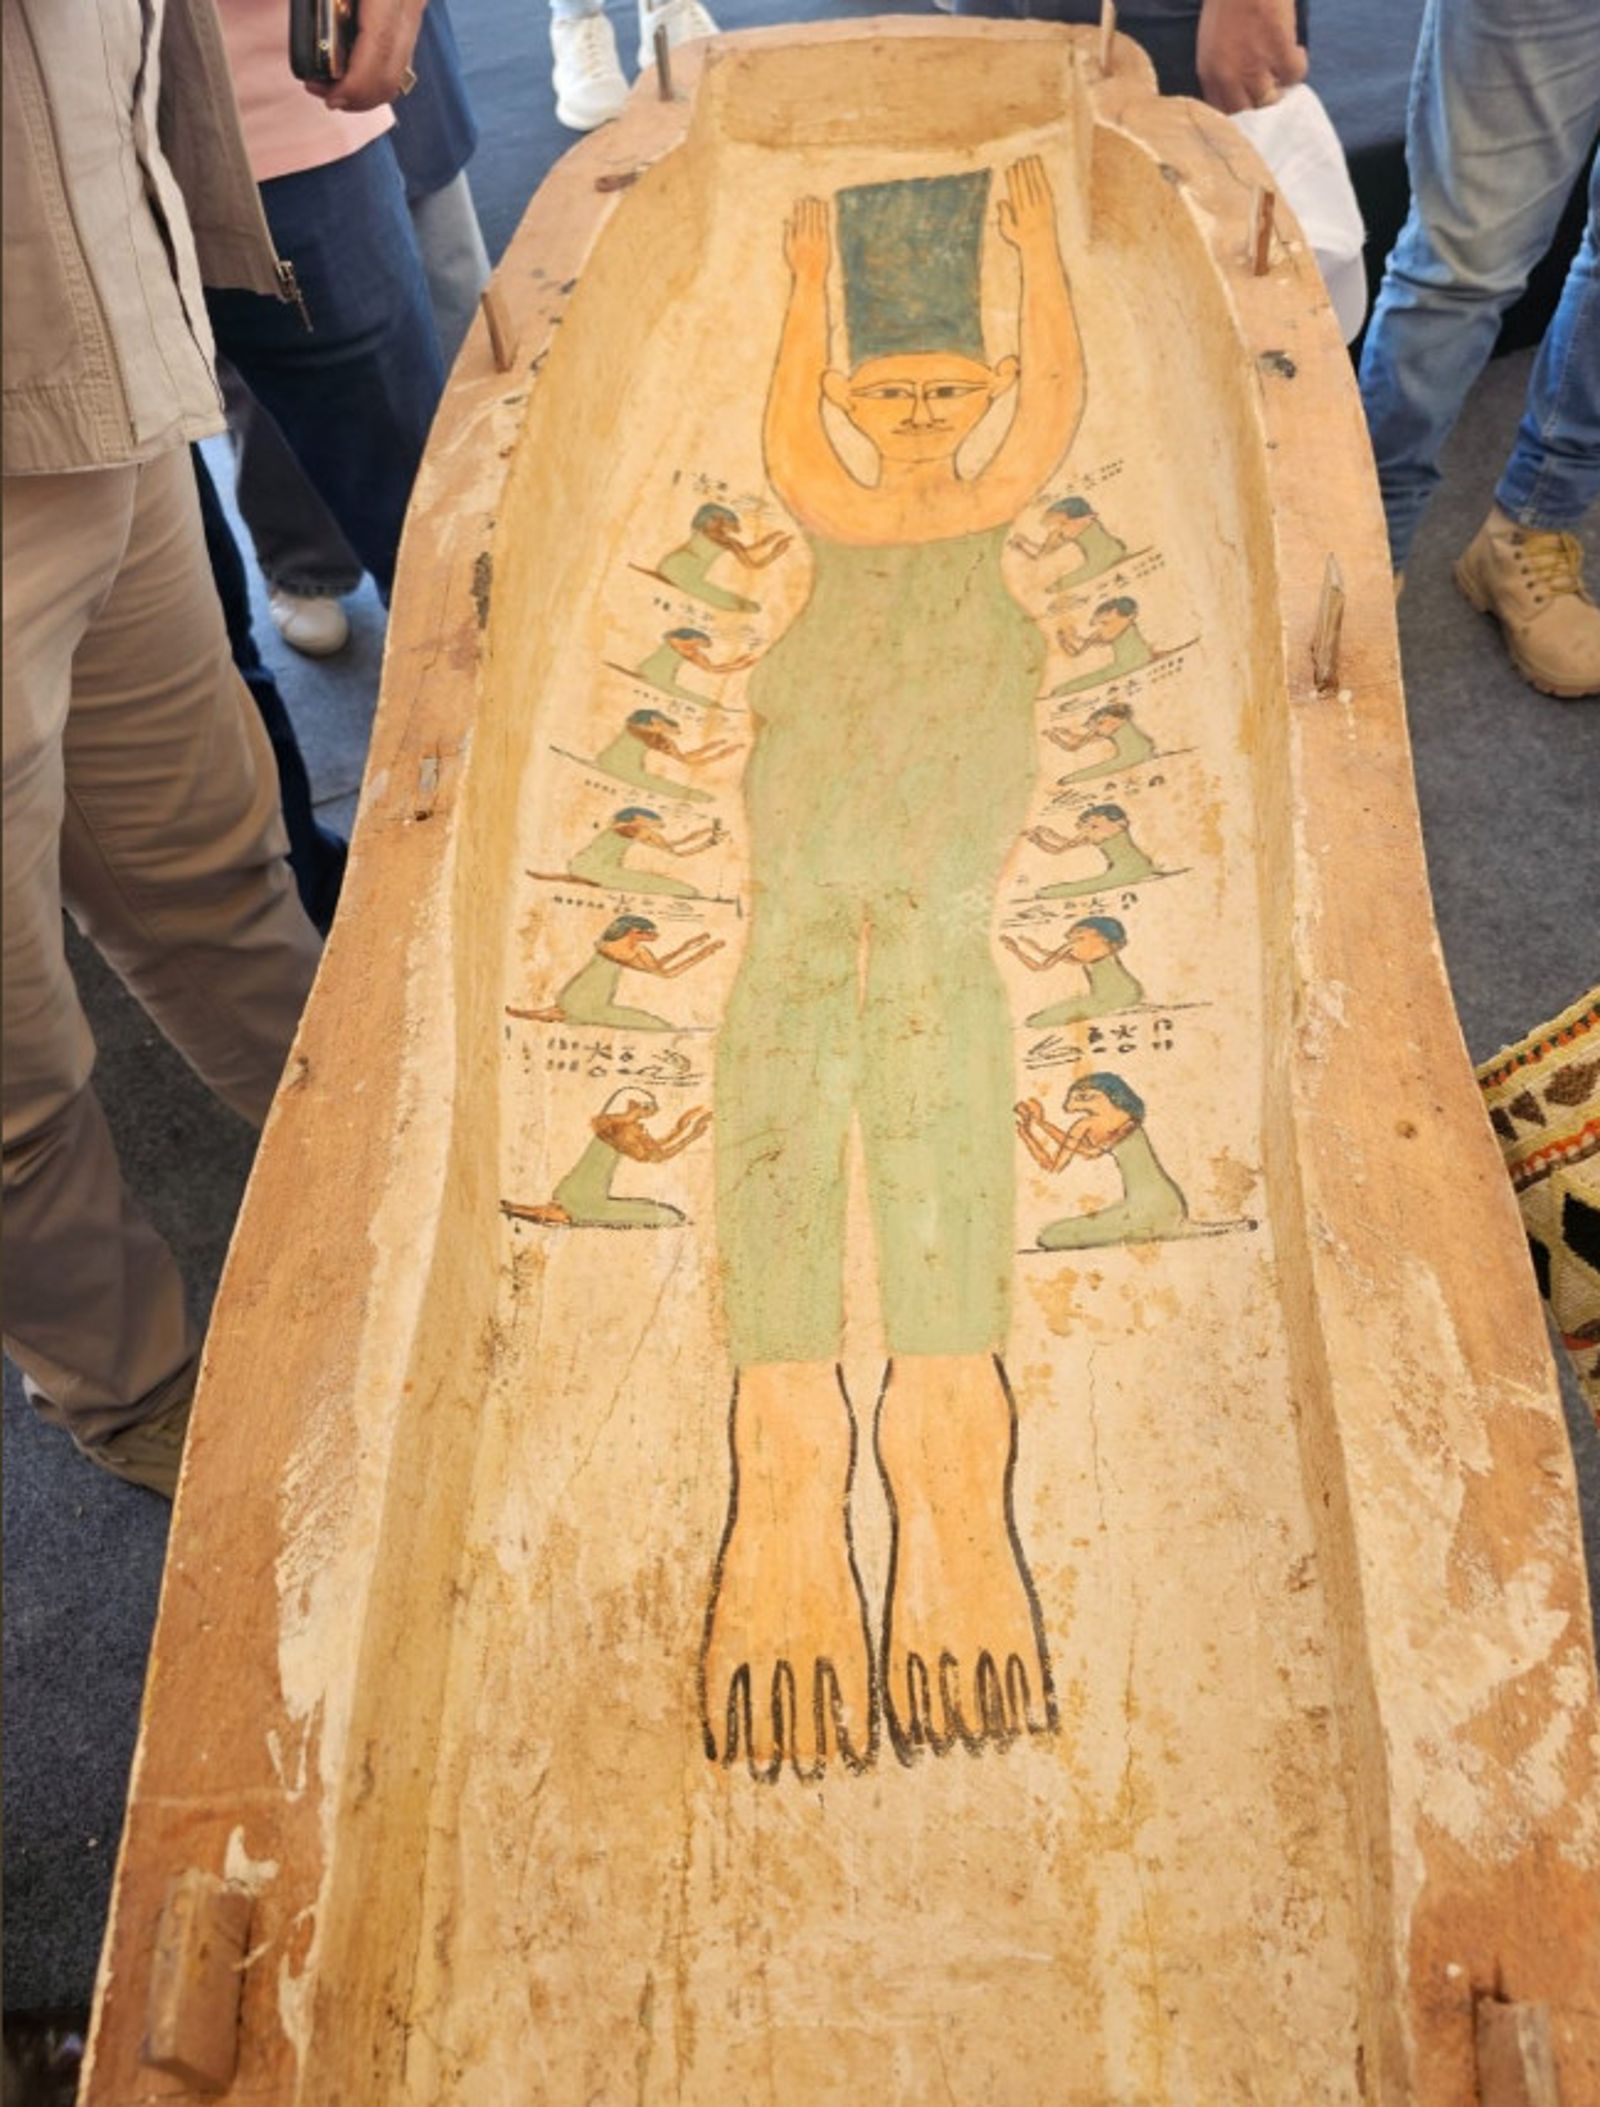 埃及3500年古墓畫像撞臉「辛普森太太美枝」　網笑歪：神預言再+1 